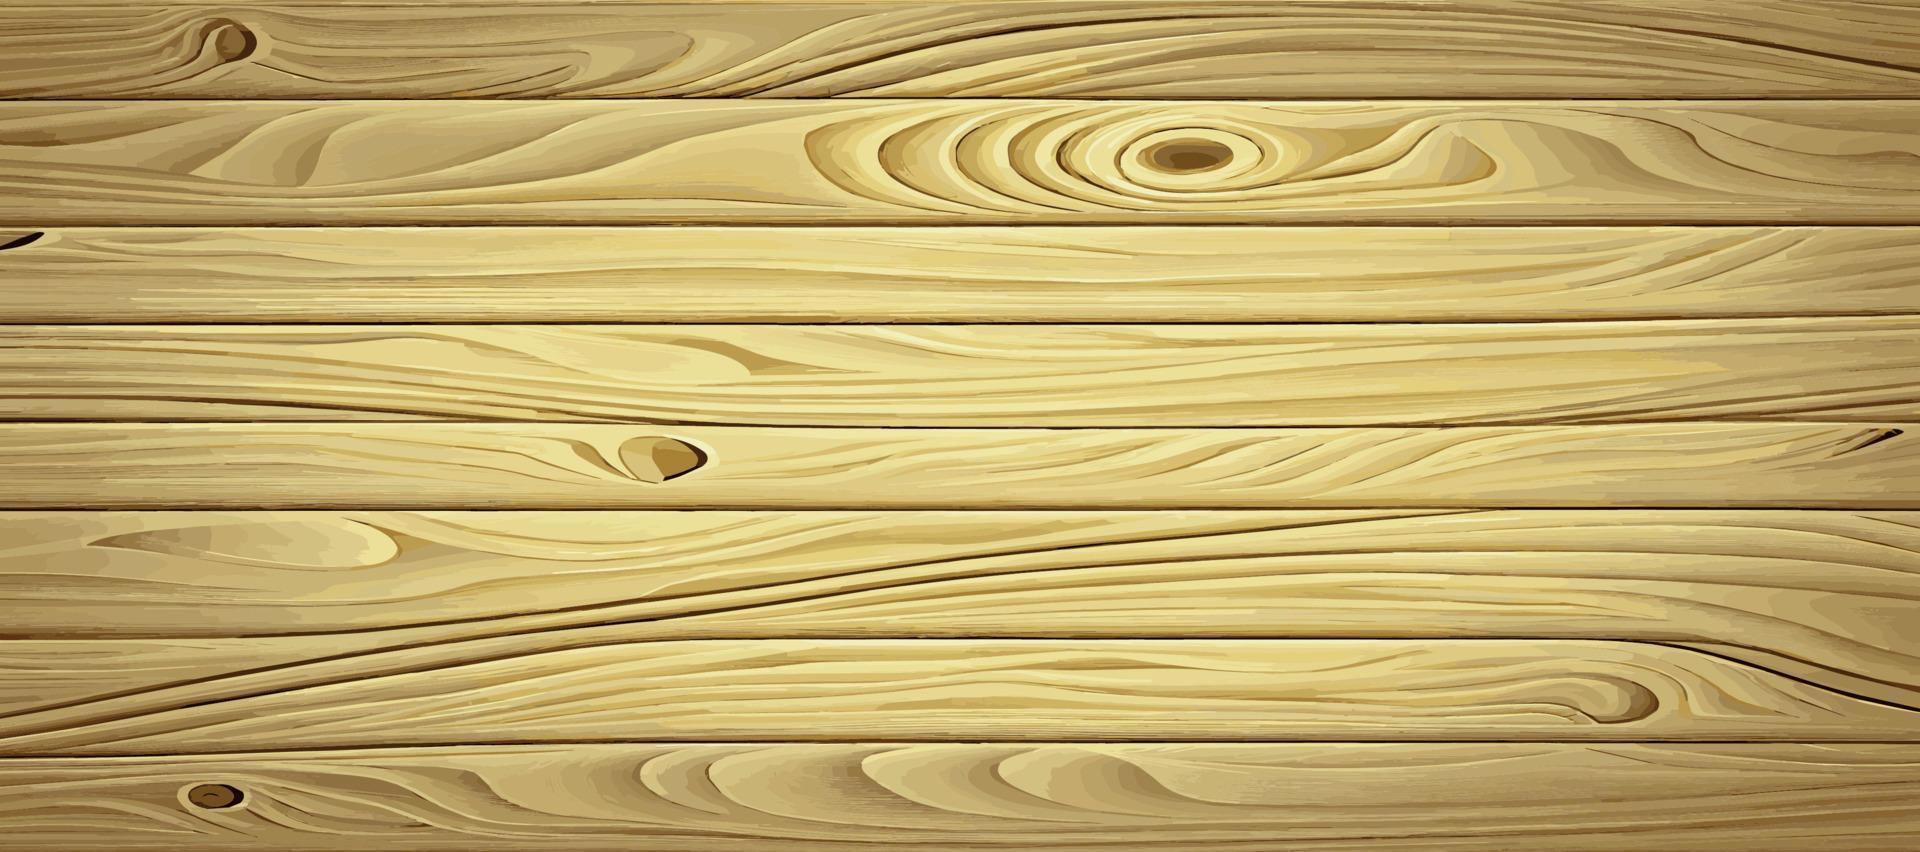 panorama- ljus trä textur med knutar, planka bakgrund - vektor